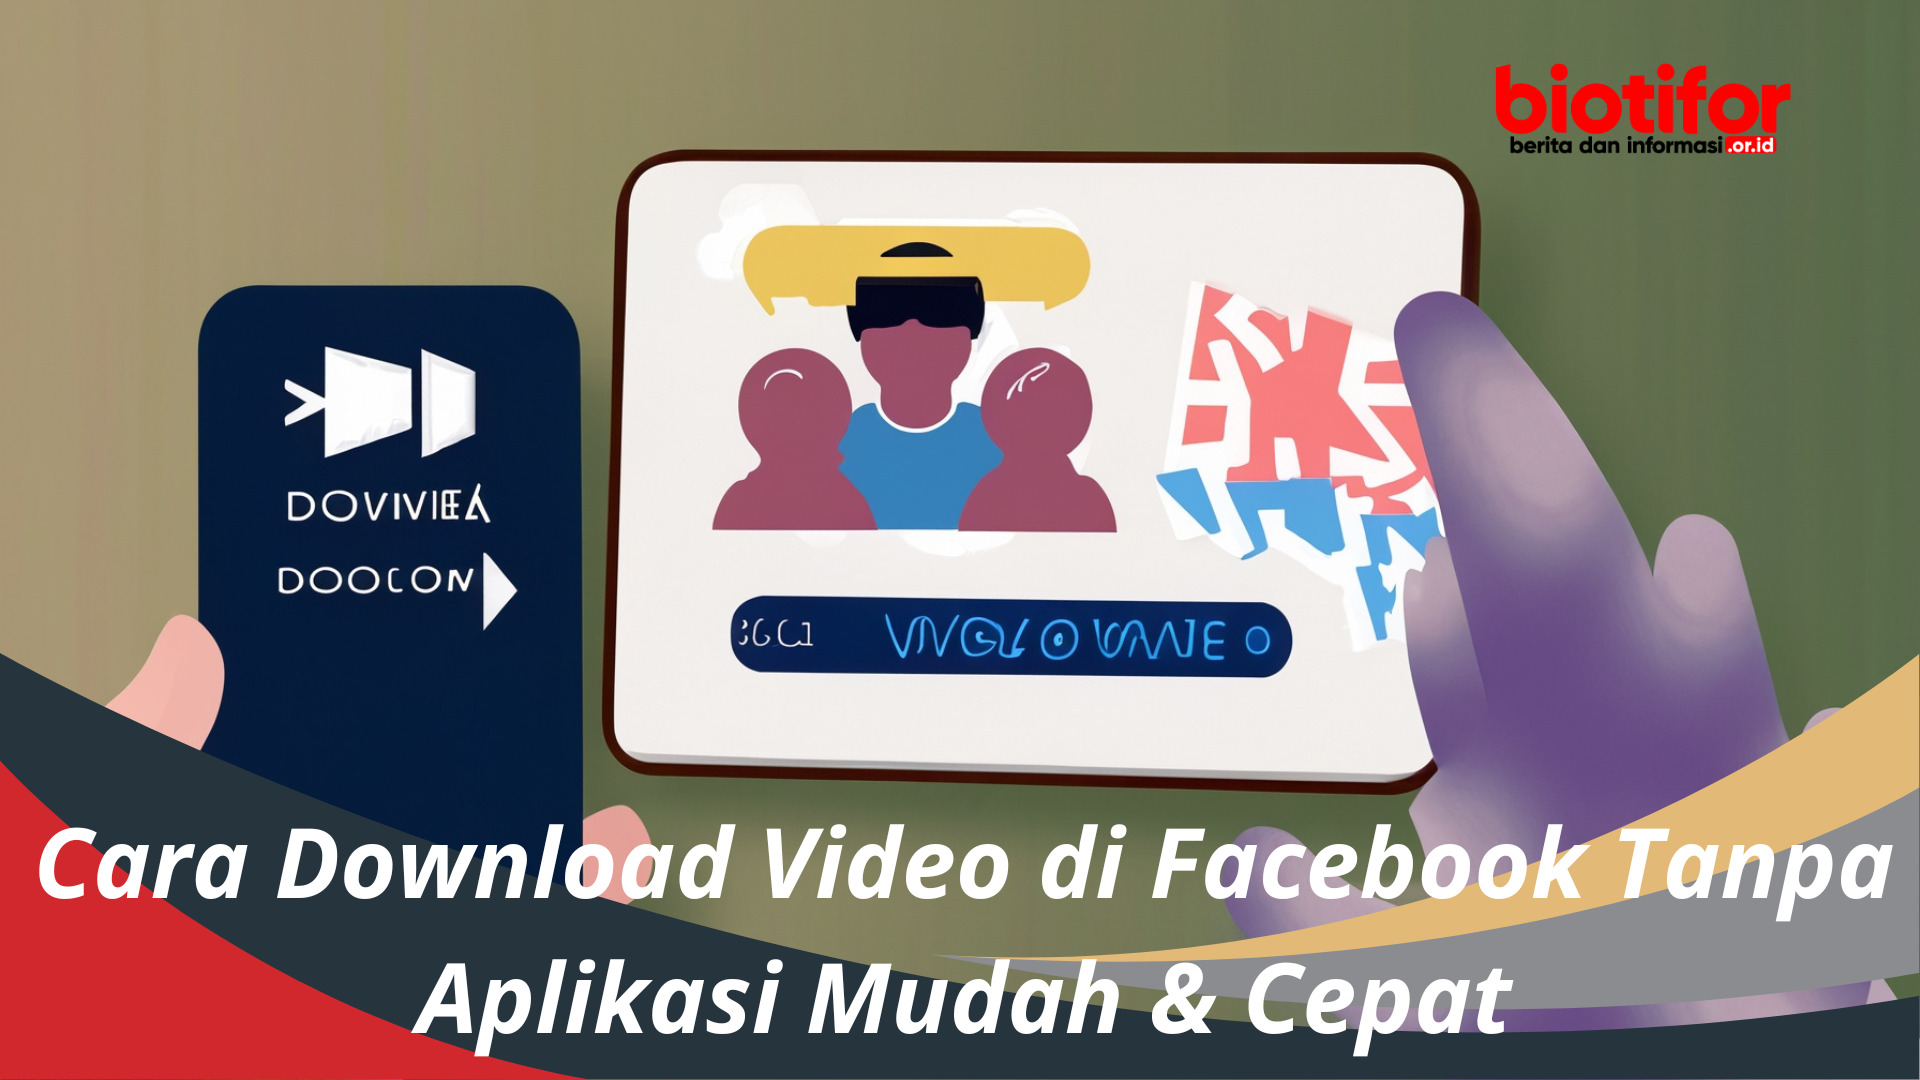 Cara Download Video di Facebook Tanpa Aplikasi Mudah & Cepat